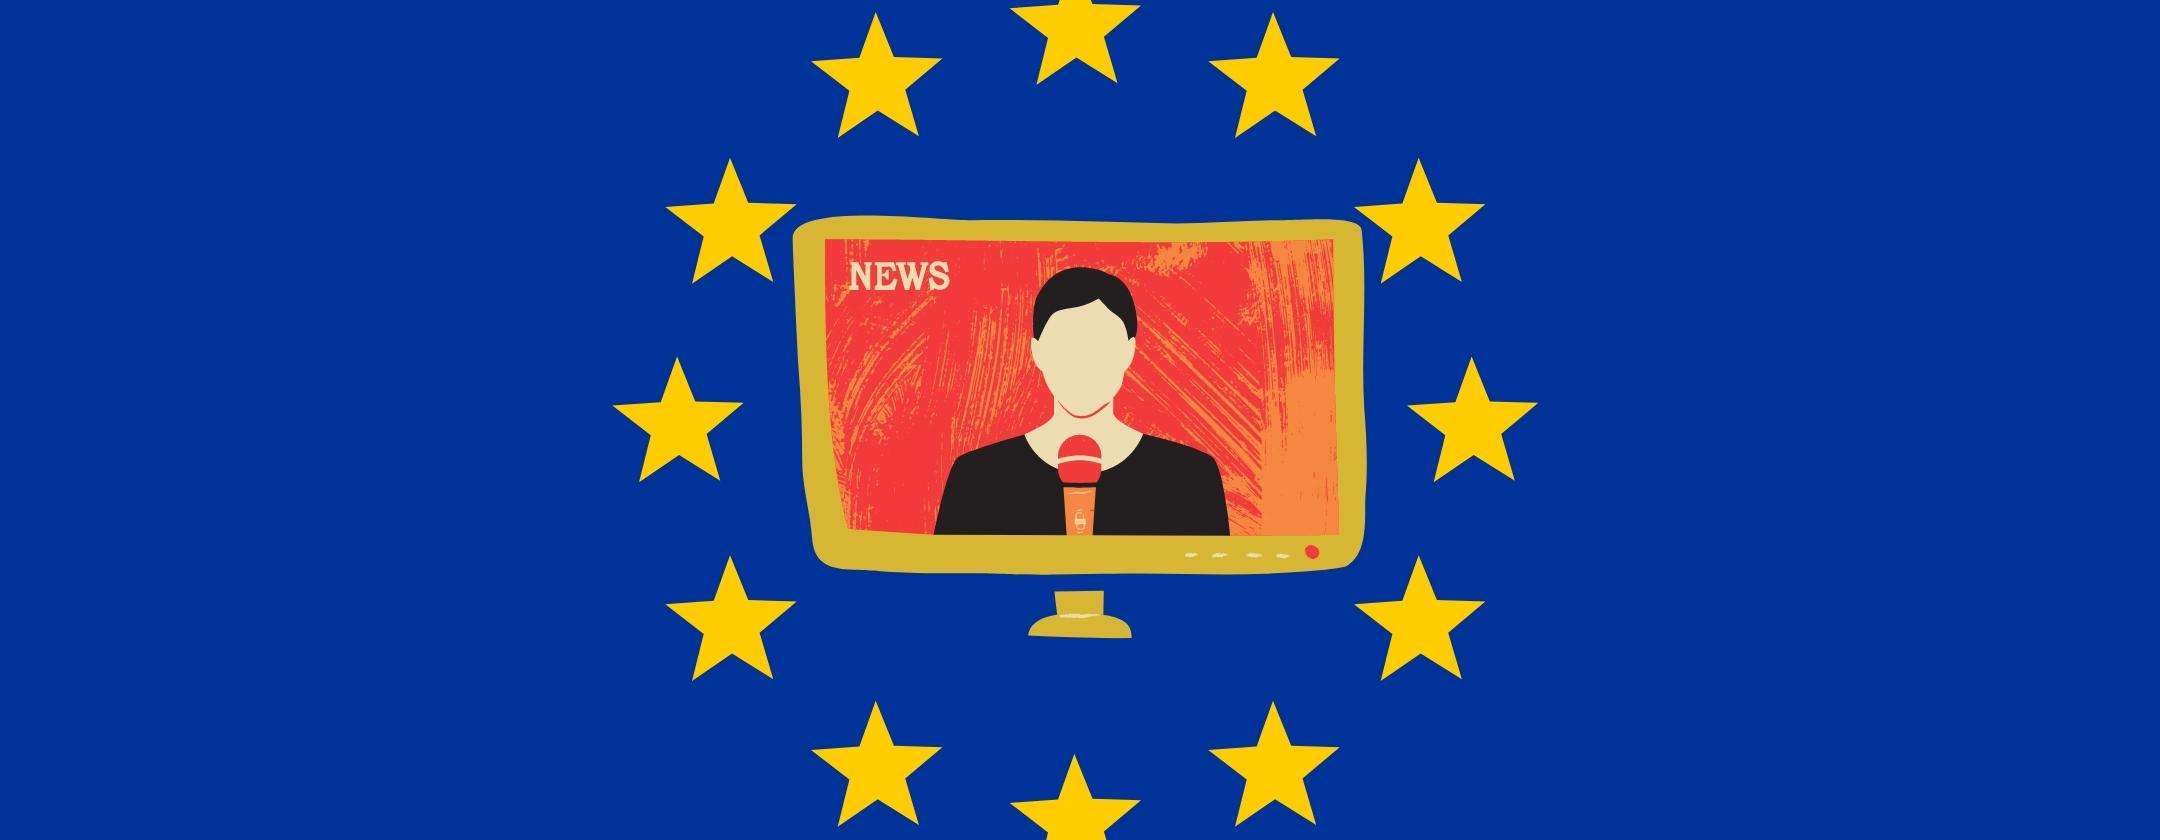 Canone TV addio: in Europa si accende una speranza